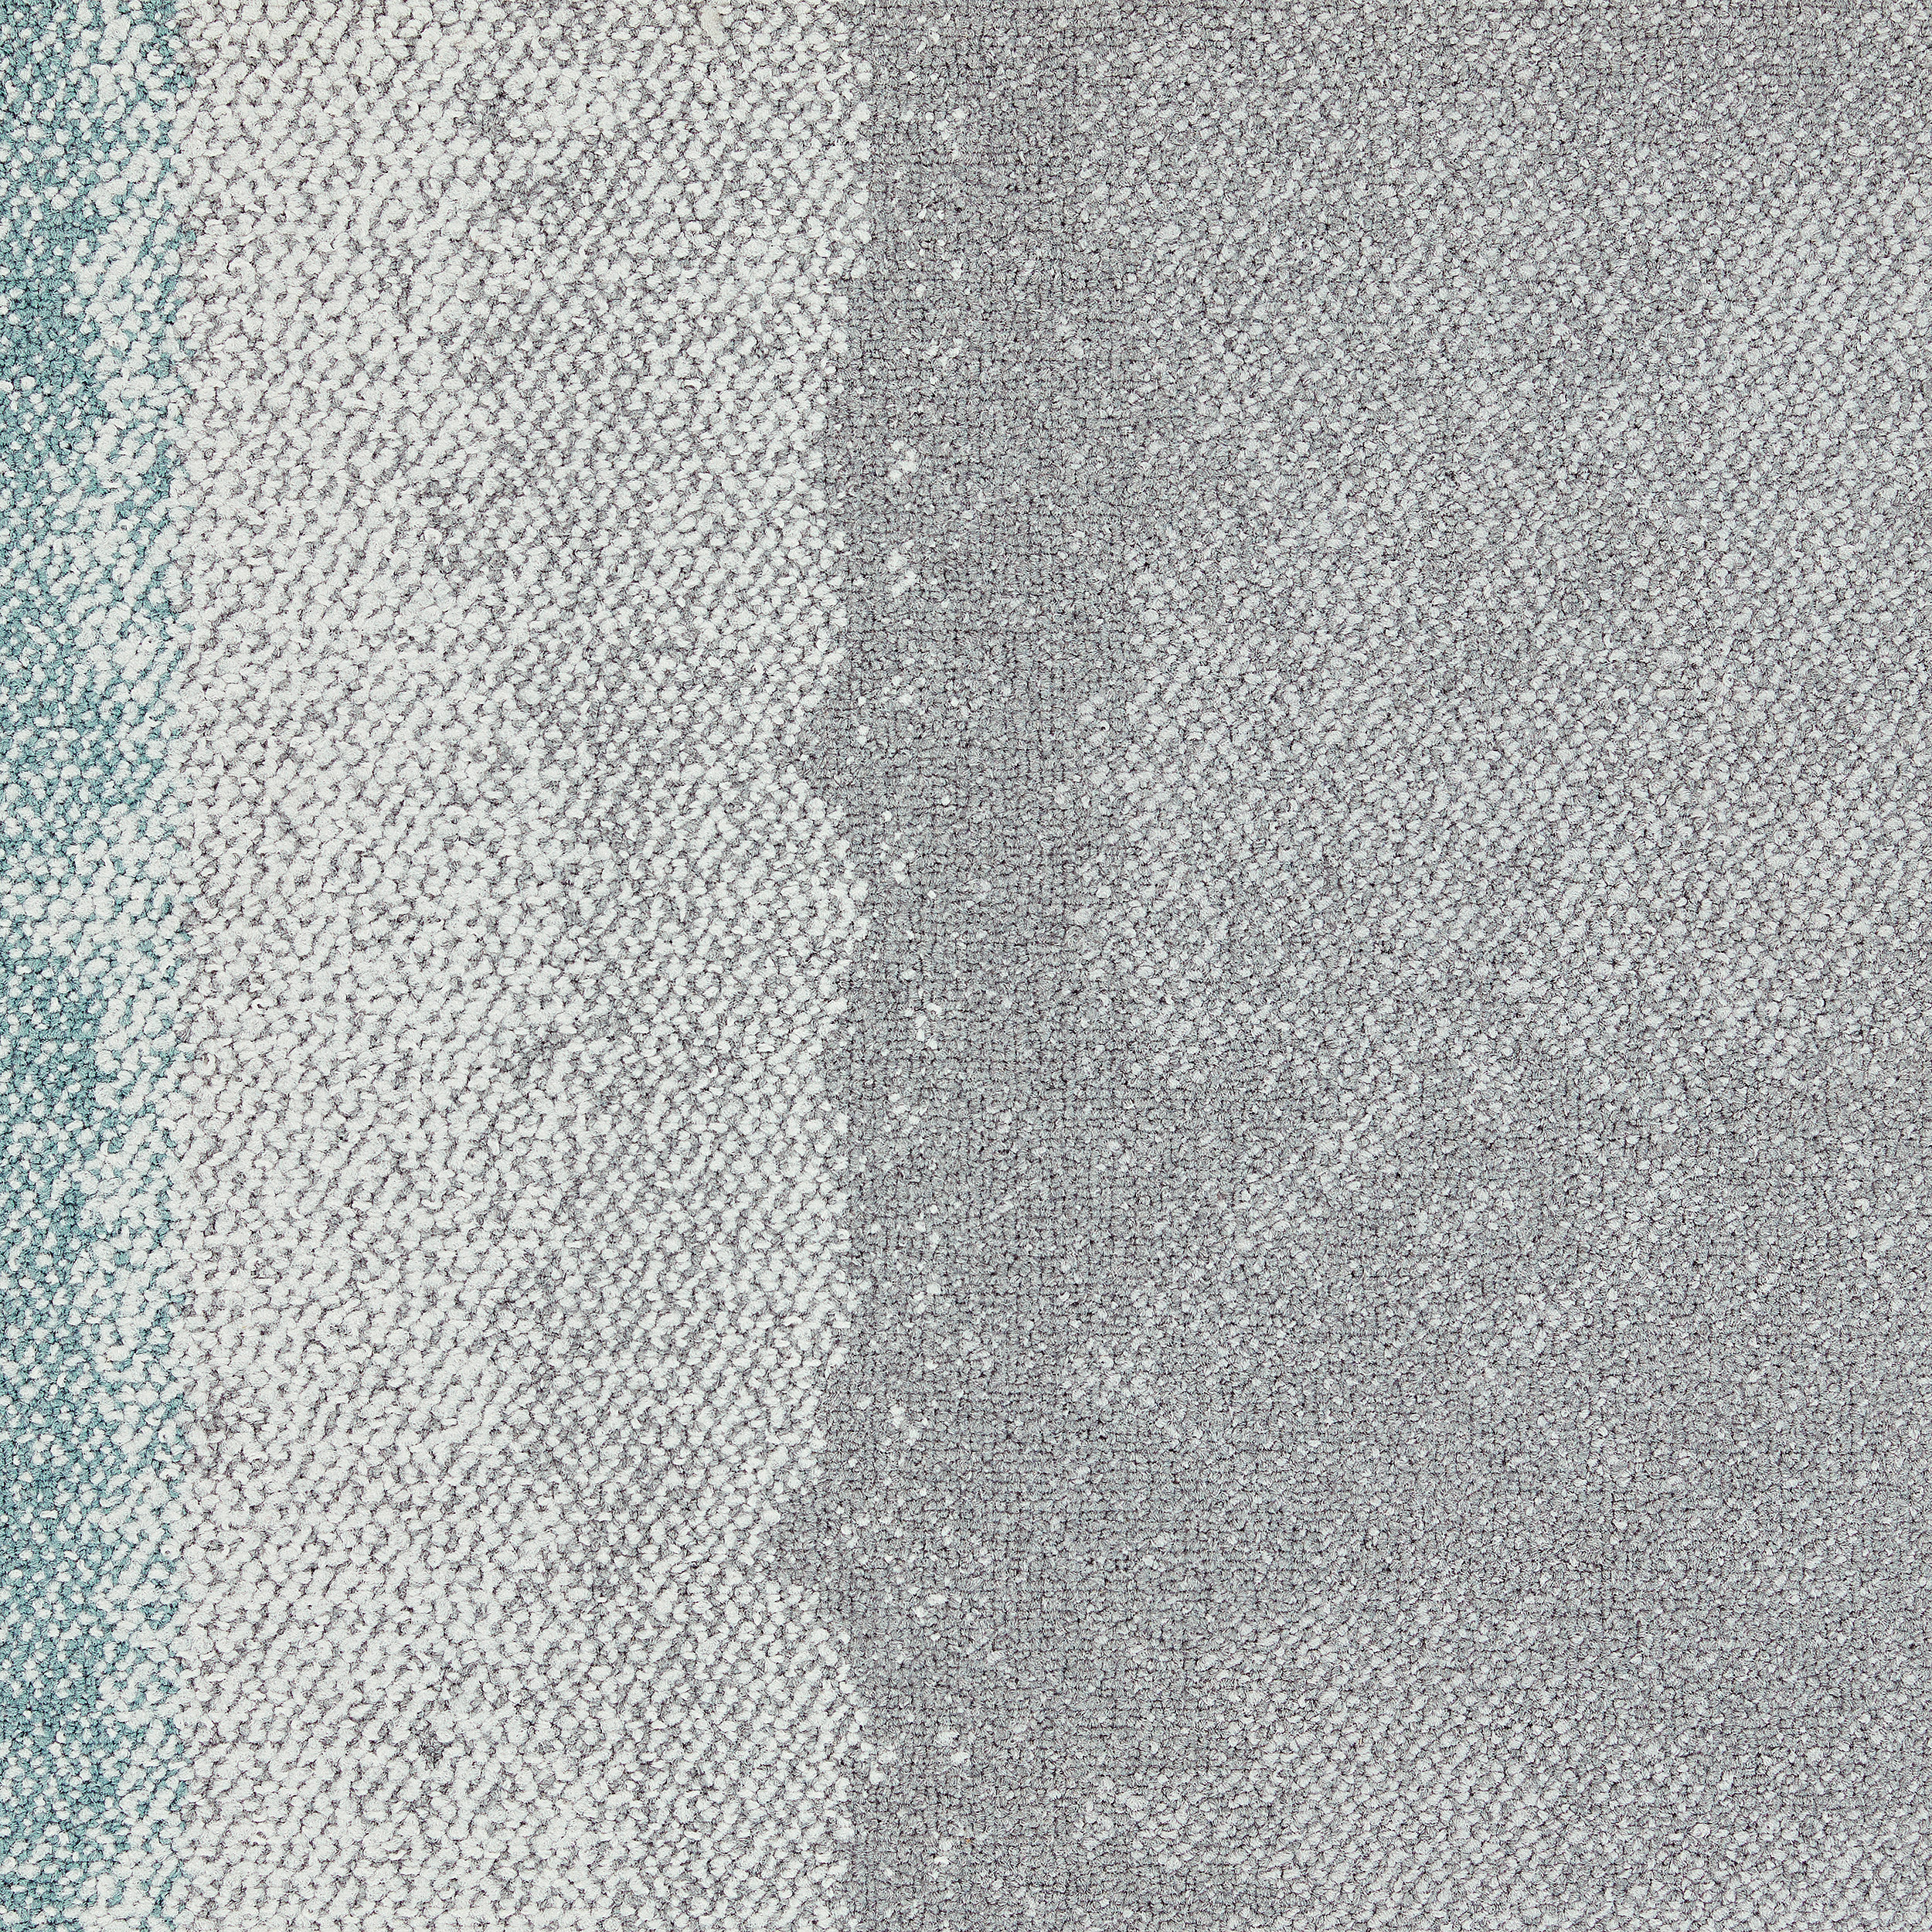 Composure Edge Carpet Tile In Wave/Isolation número de imagen 5